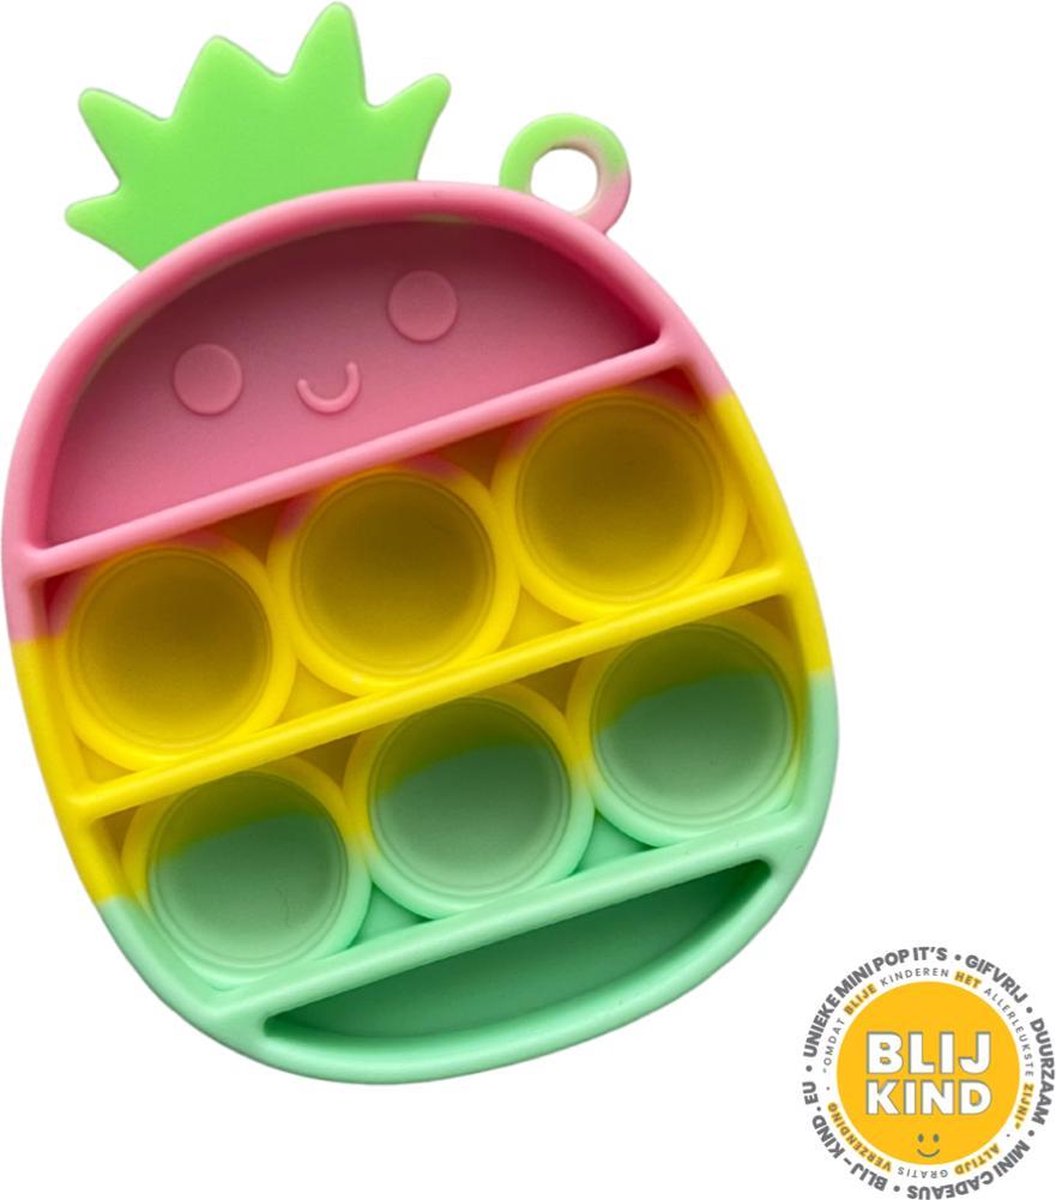 Blij Kind - Fidget - Pop it - Ananas - Mini - Roze - Geel - Groen -  Sleutelhanger | bol.com